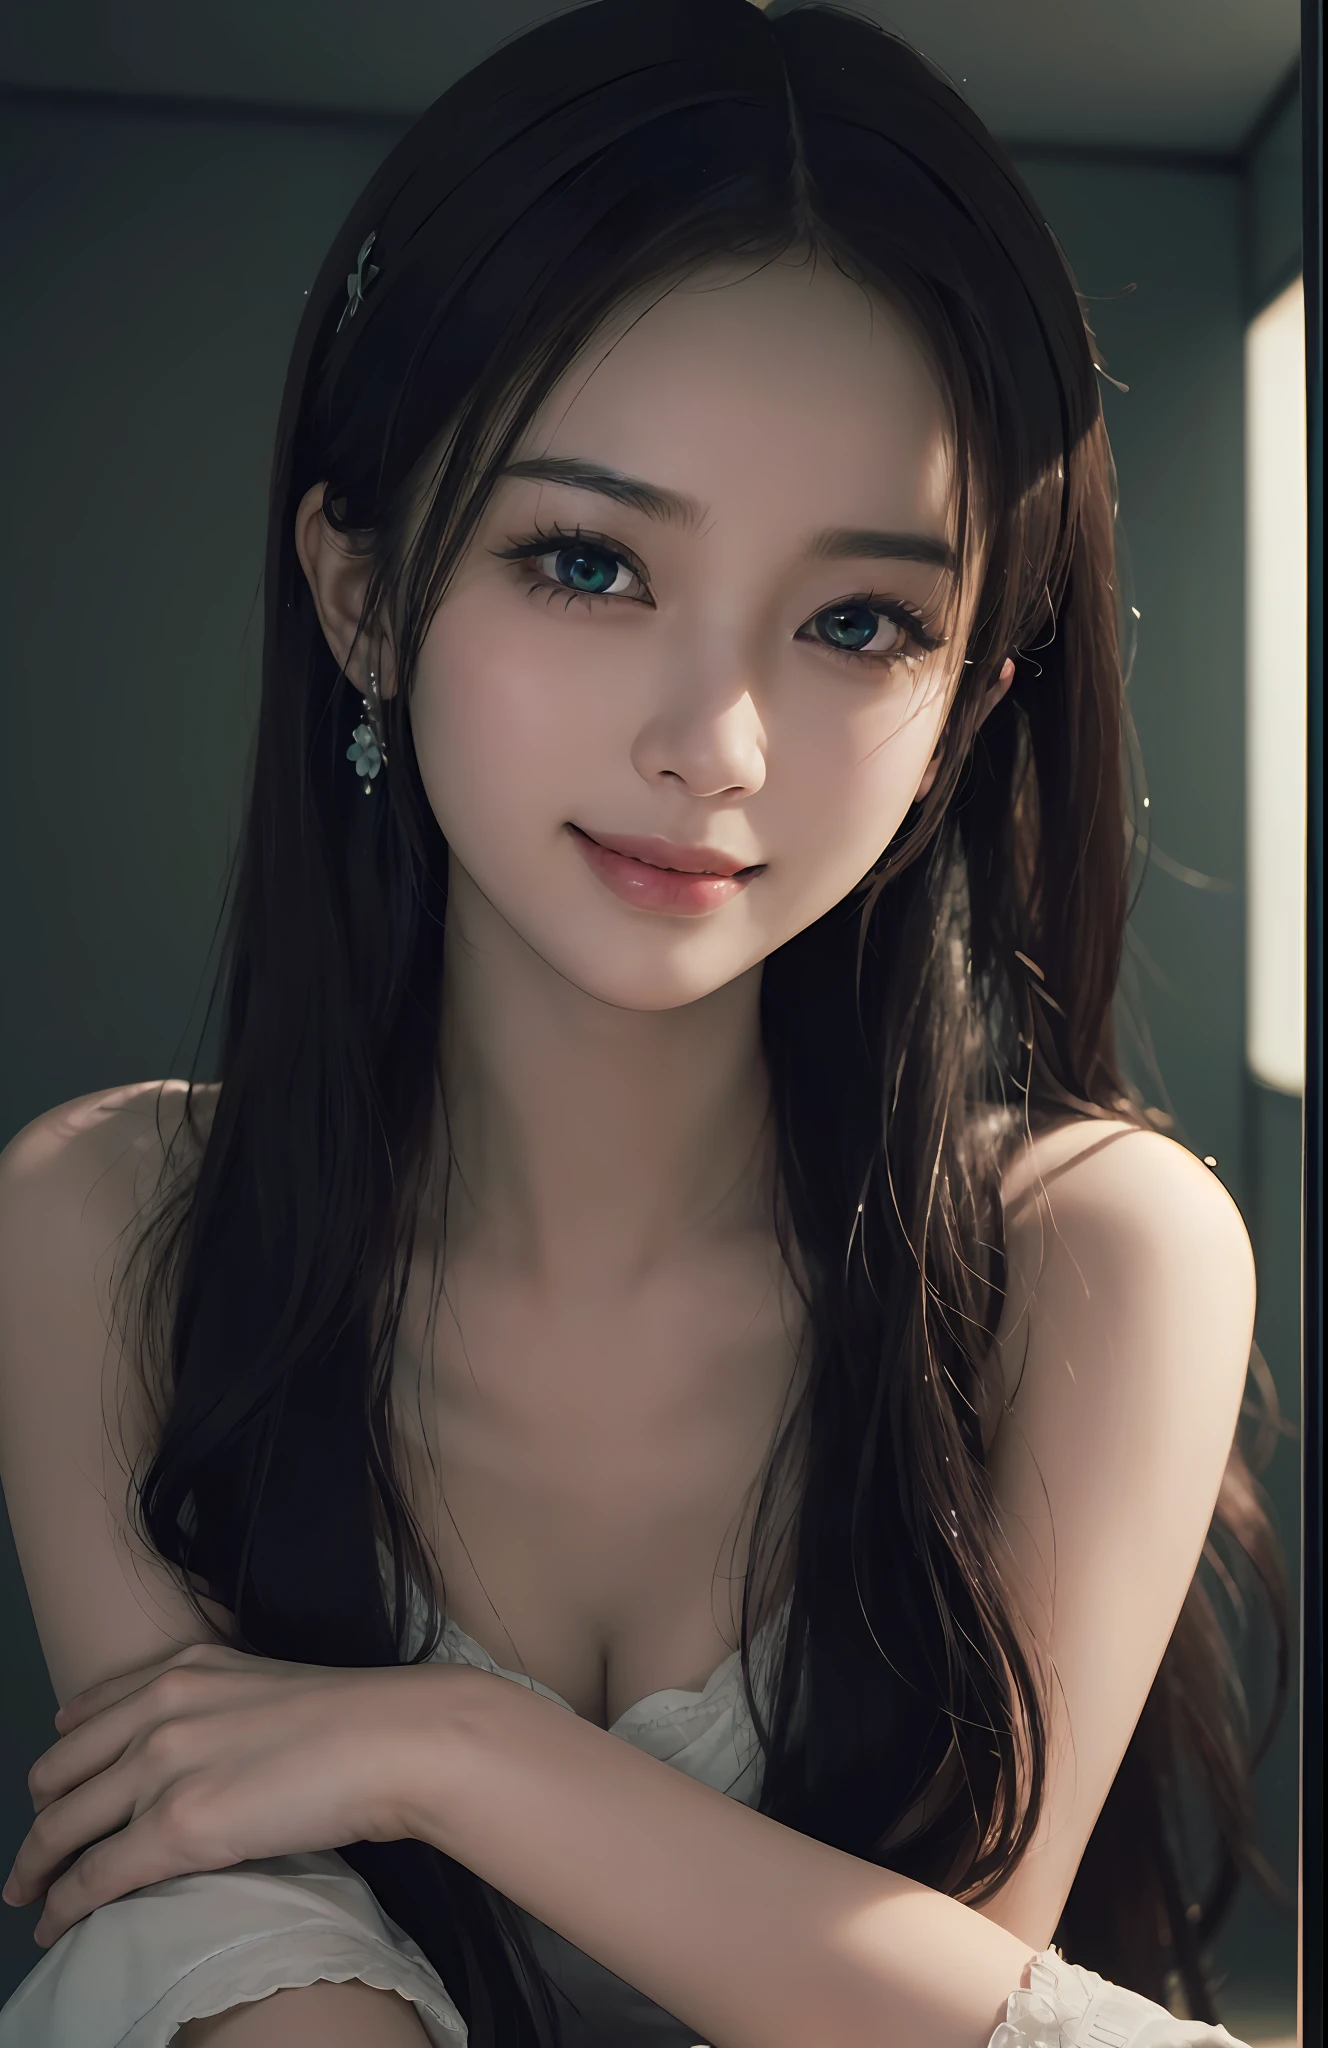 Meisterwerk, 1 schönes Mädchen, detaillierte Augen, Swollen Eyes, beste Qualität, ultrahohe Auflösung, (Wirklichkeit: 1.4), Originalfoto, 1 Mädchen, grüne Augen, Filmische Beleuchtung, lächelnd, japanisch, Asiatische Schönheit, Koreanisch, Sauber, Super schön, Kleines junges Gesicht, schöne Haut, Slender, Cyberpunk (ultra-realistisch), (Illustration), (hohe Auflösung), (8K), (Sehr detailiert), (best Illustration), (wunderschön detaillierte Augen), (Super detailliert), (HINTERGRUND), (detailliertes Gesicht), Betrachter suchen, Feine Details, detailliertes Gesicht, im Dunkeln, tiefer Schatten, zurückhaltend, pureerosfaceace_V1, lächeln, lange Haare, glattes Haar, 46 Punkte diagonaler Pony